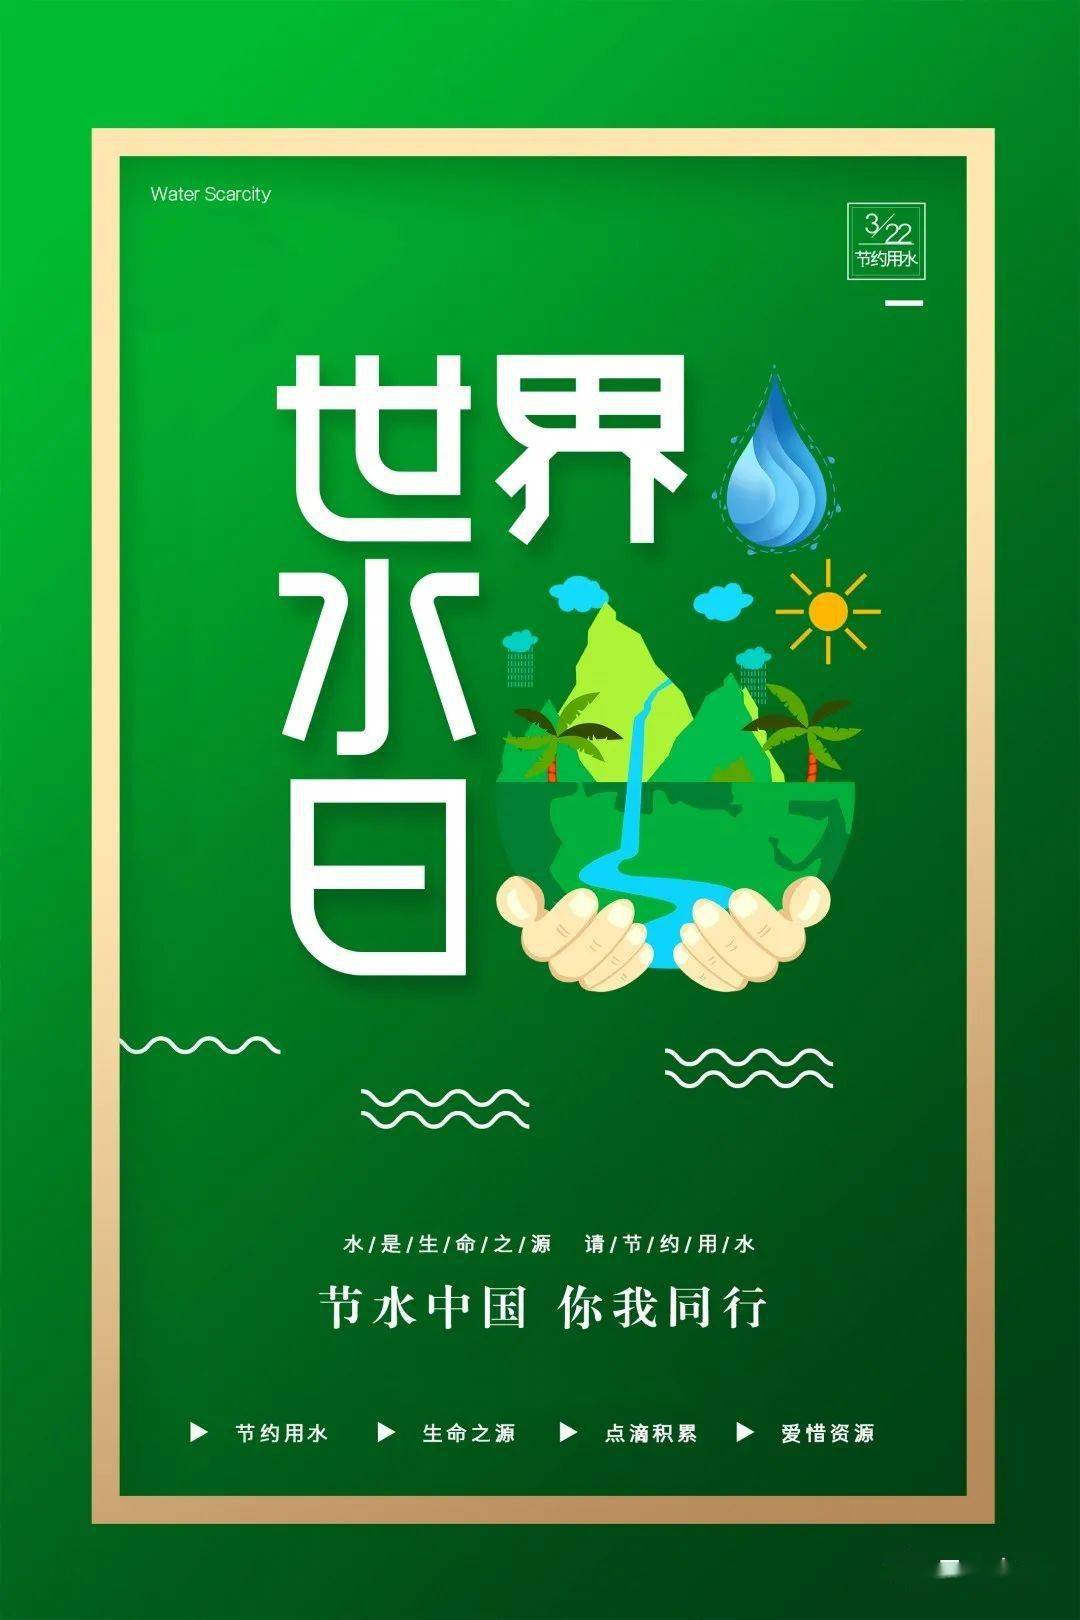 昆明分局组织开展世界水日中国水周系列宣传活动